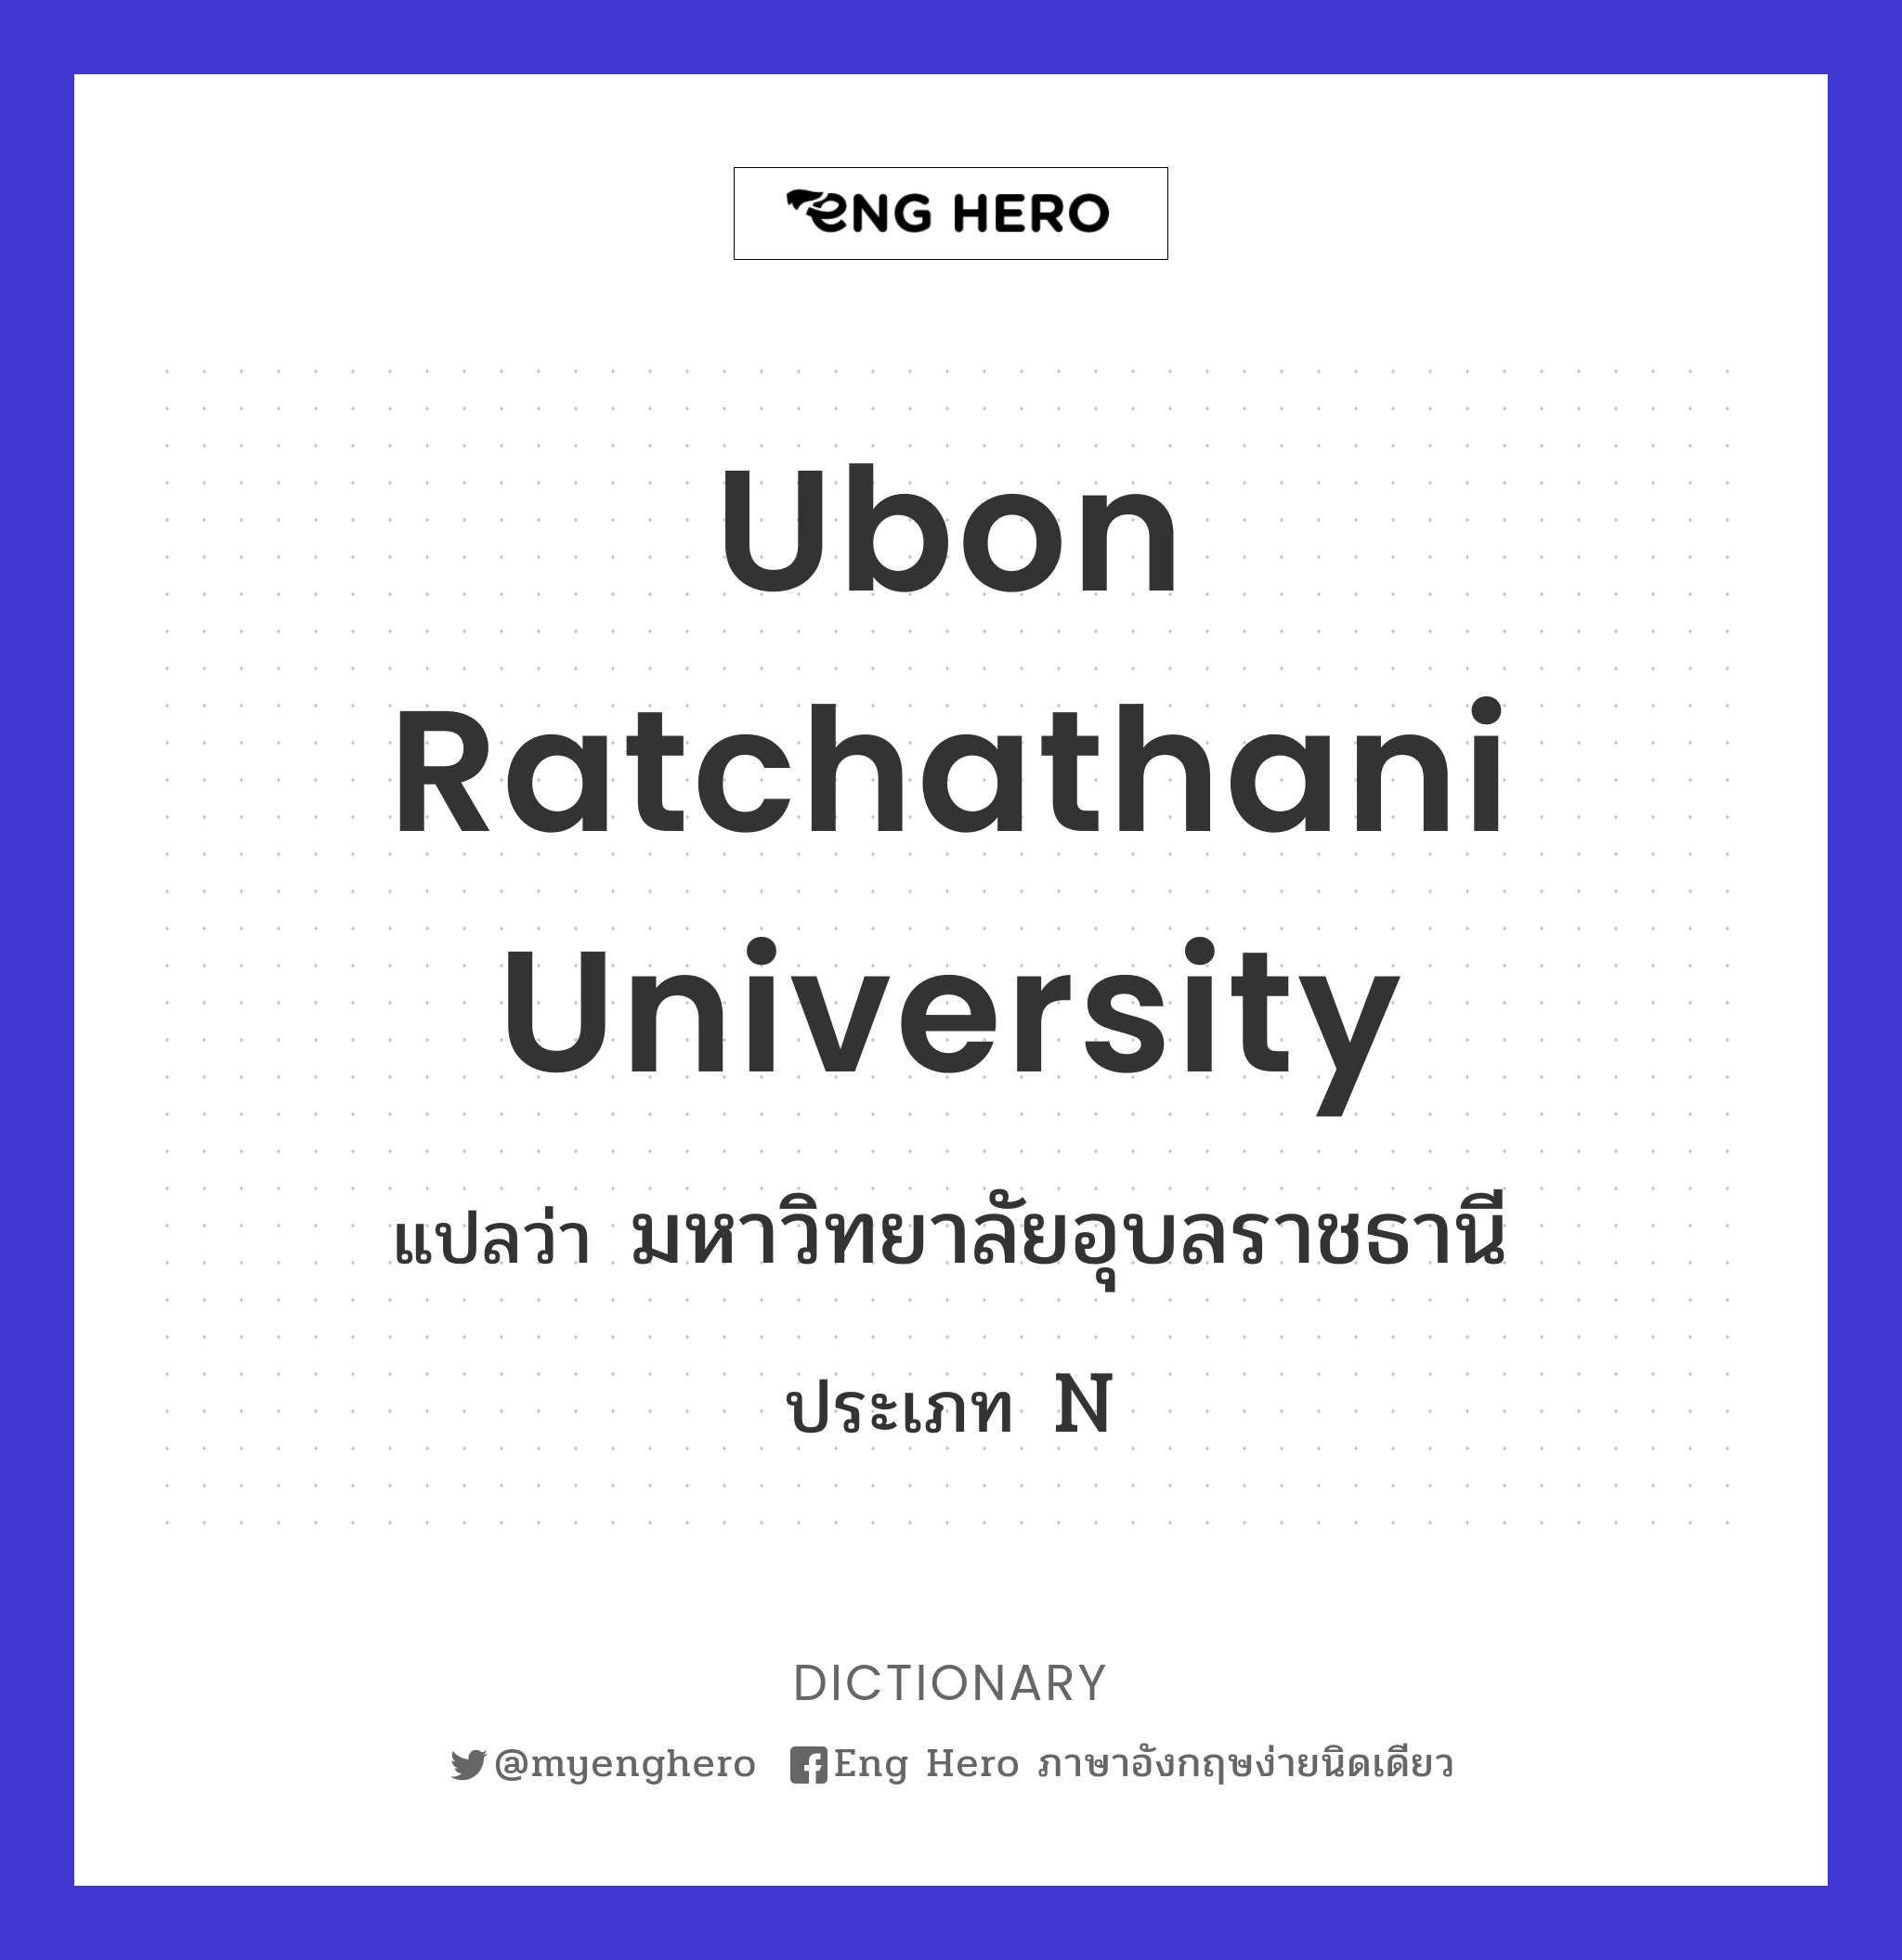 Ubon Ratchathani University